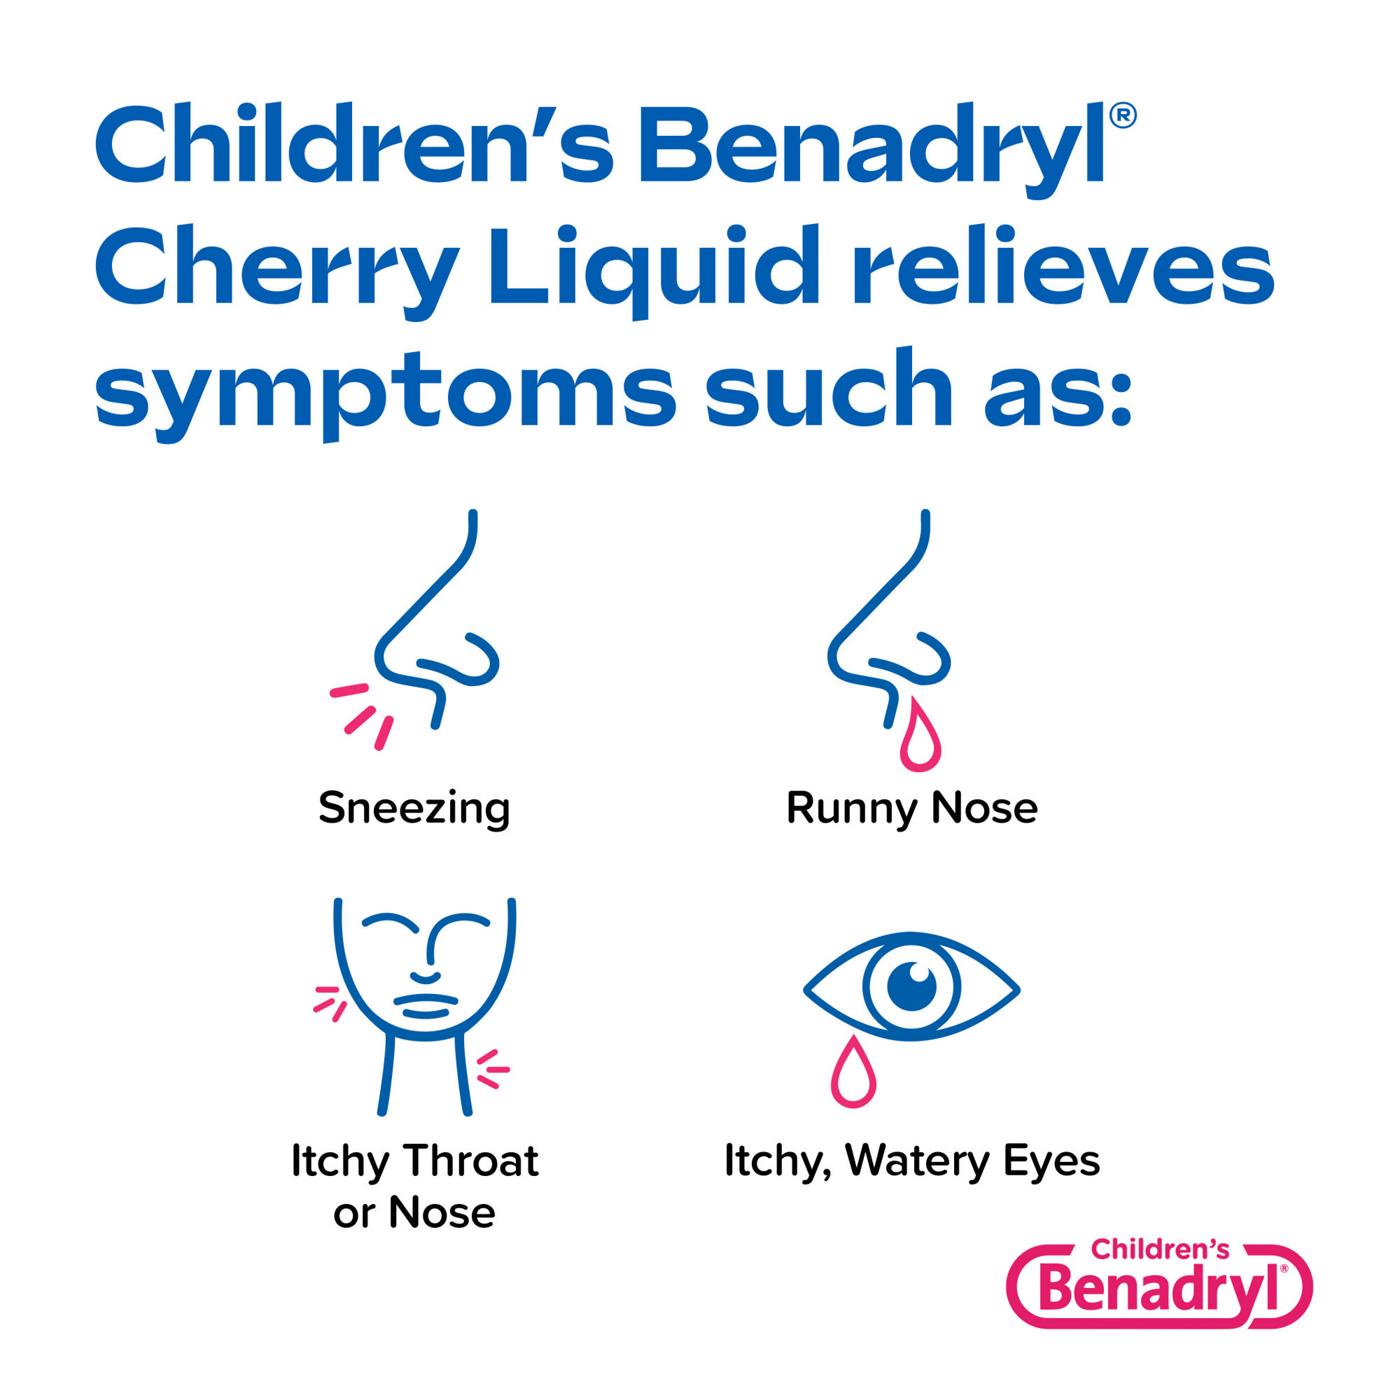 Benadryl Children's Allergy Liquid - Cherry; image 3 of 6